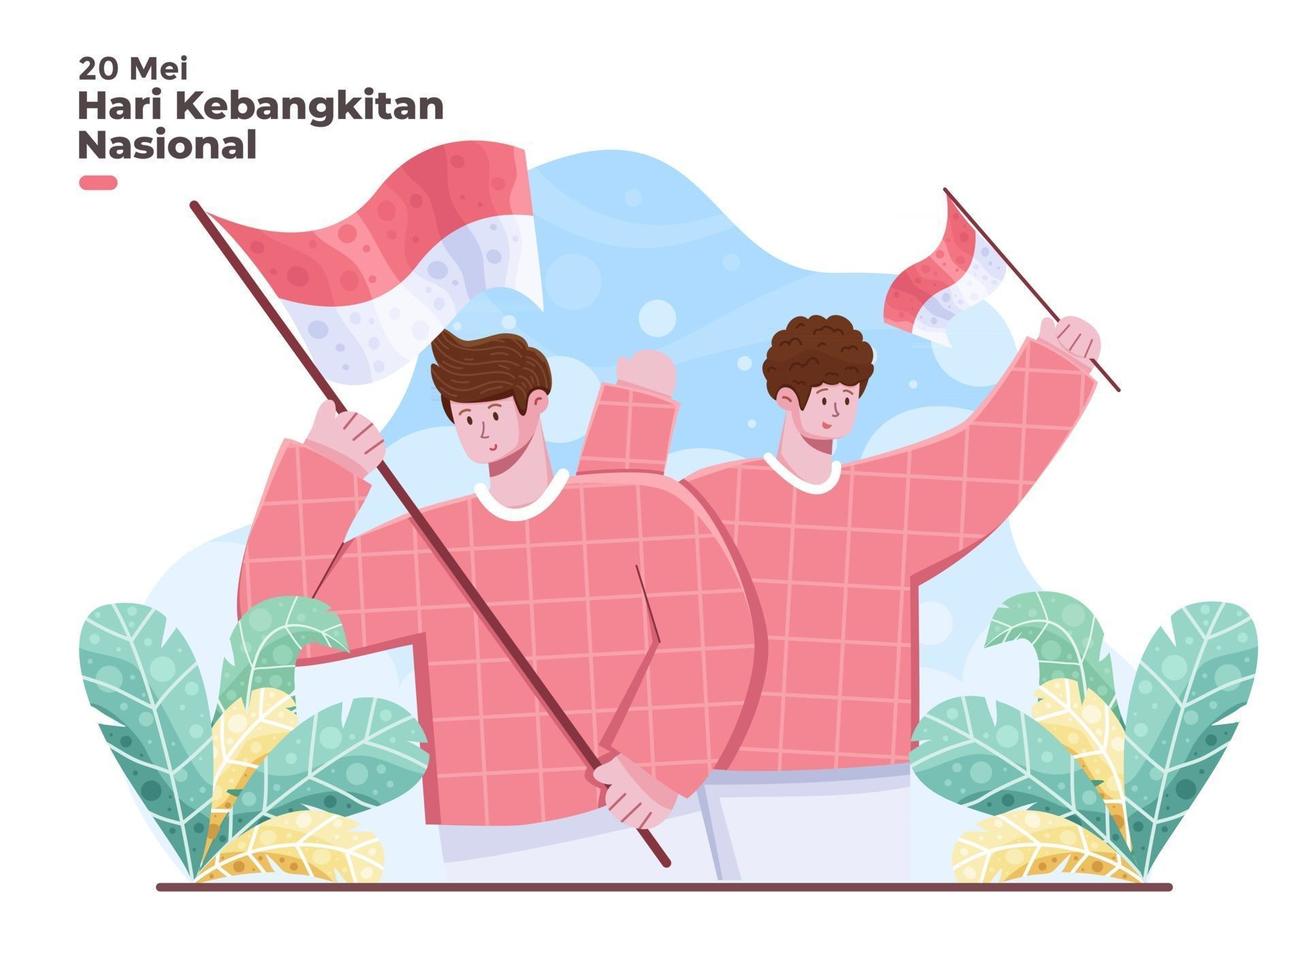 dia nacional do despertar da Indonésia em 20 de maio ilustração com pessoas segurando a bandeira nacional da Indonésia 10 mei memperingati hari kebangkitan nasional indonésia vetor